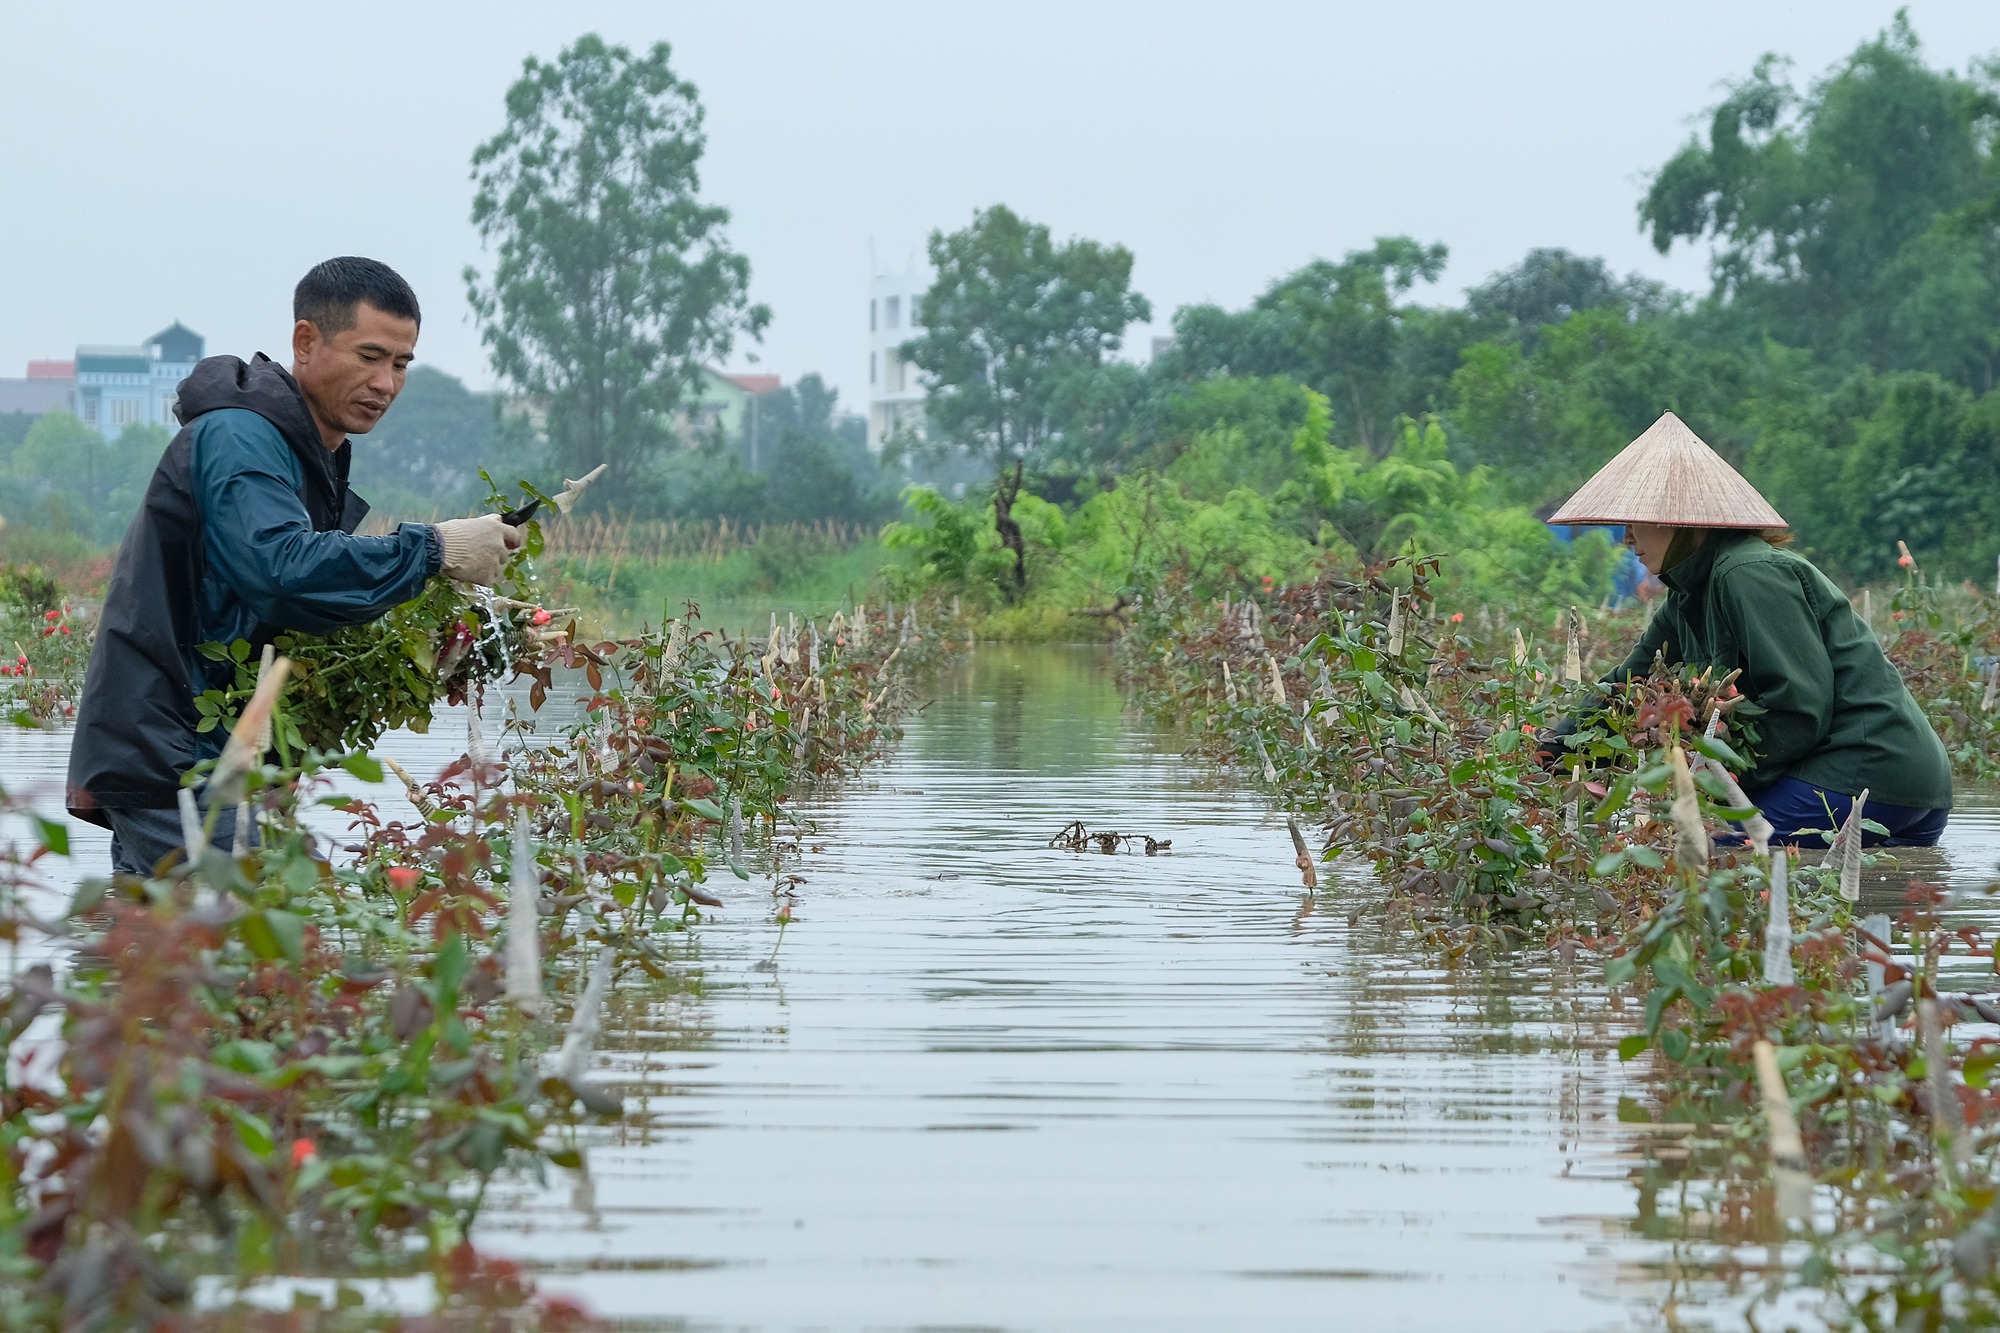 Mưa ngớt, người dân Hà Nội vẫn lội bì bõm đánh cá quanh nhà, nơi mò mẫm cắt hoa vớt vát tài sản - Ảnh 11.